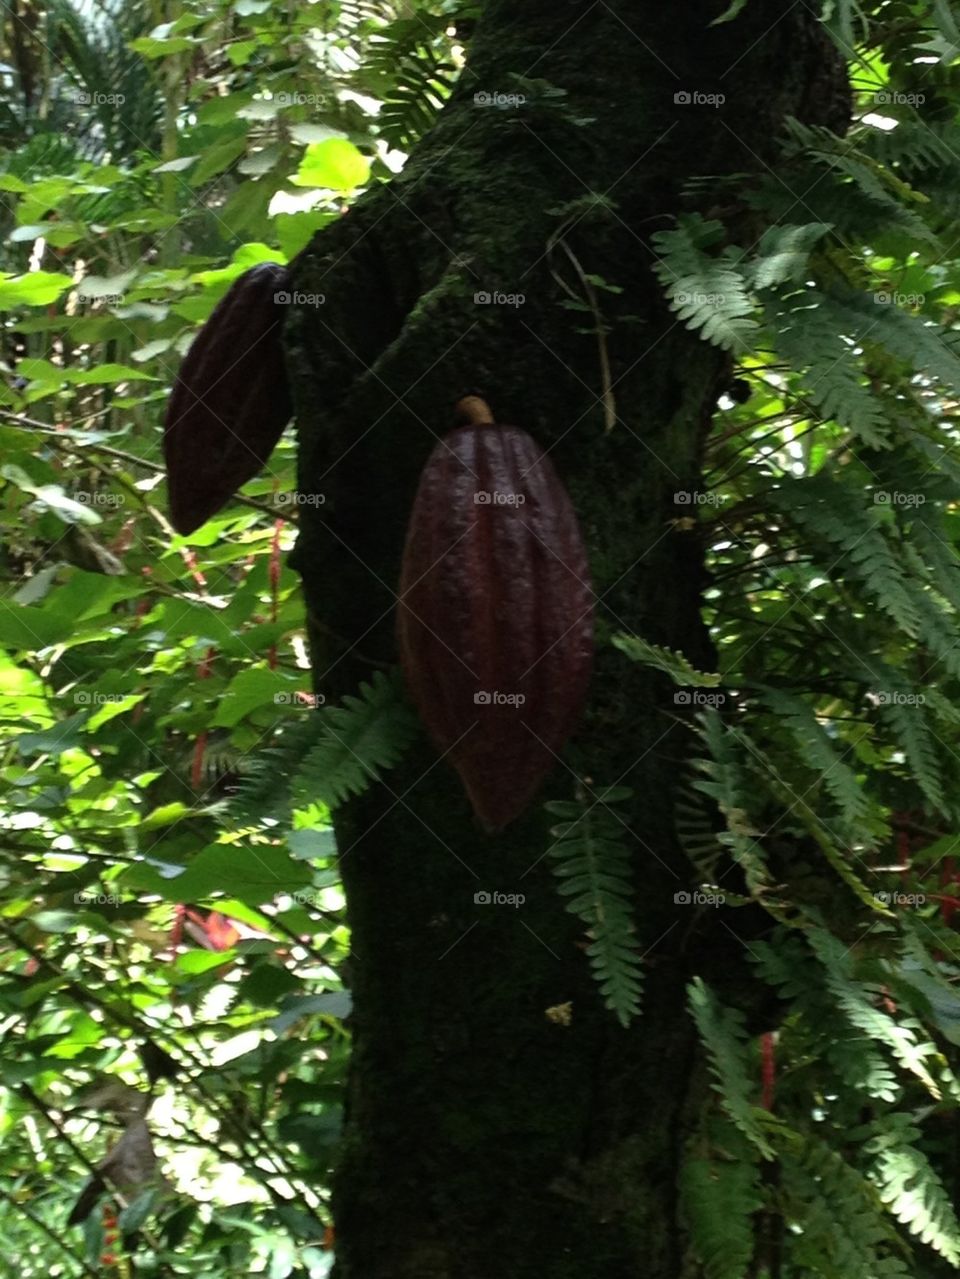 The Cocoa Plant